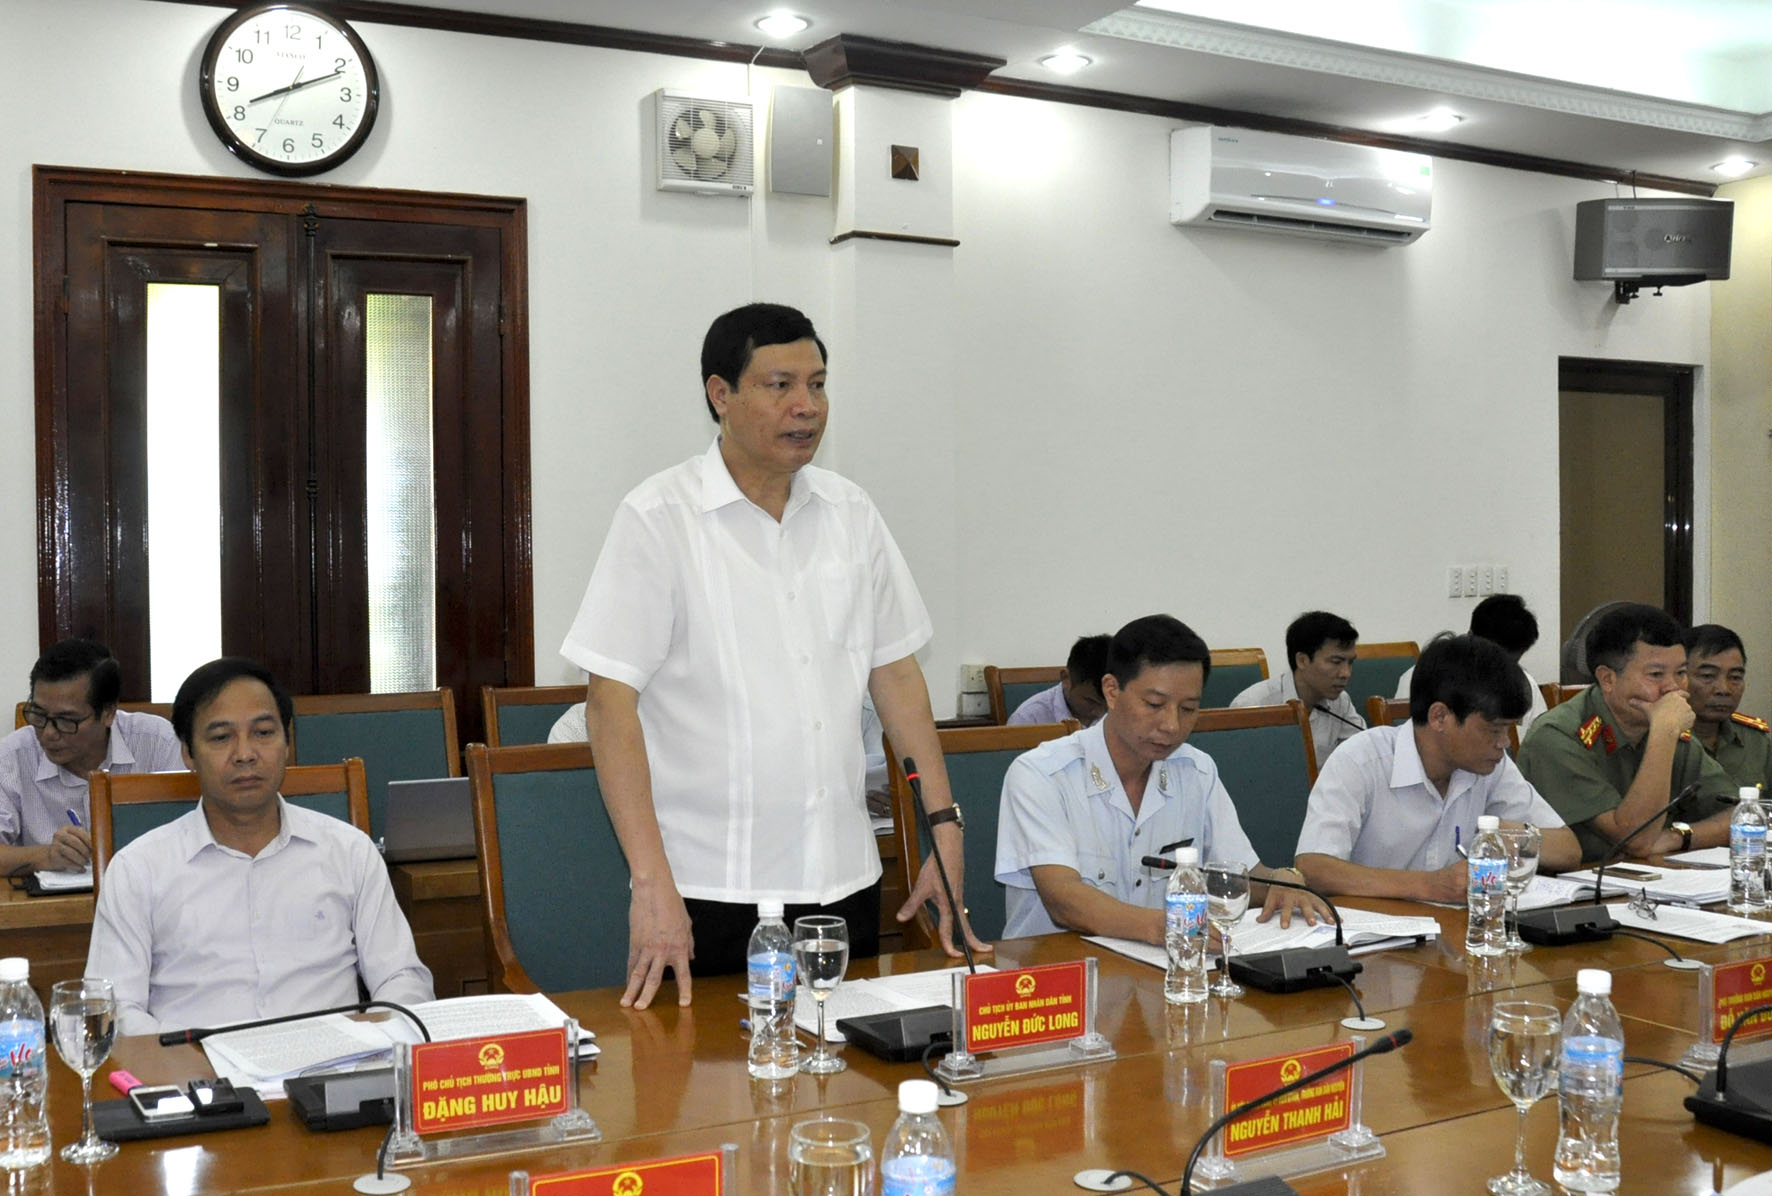 Đồng chí Nguyễn Đức Long, Chủ tịch UBND tỉnh phát biểu tại buổi làm việc với Đoàn công tác Ban Dân nguyện của Uỷ ban Thường vụ Quốc hội.